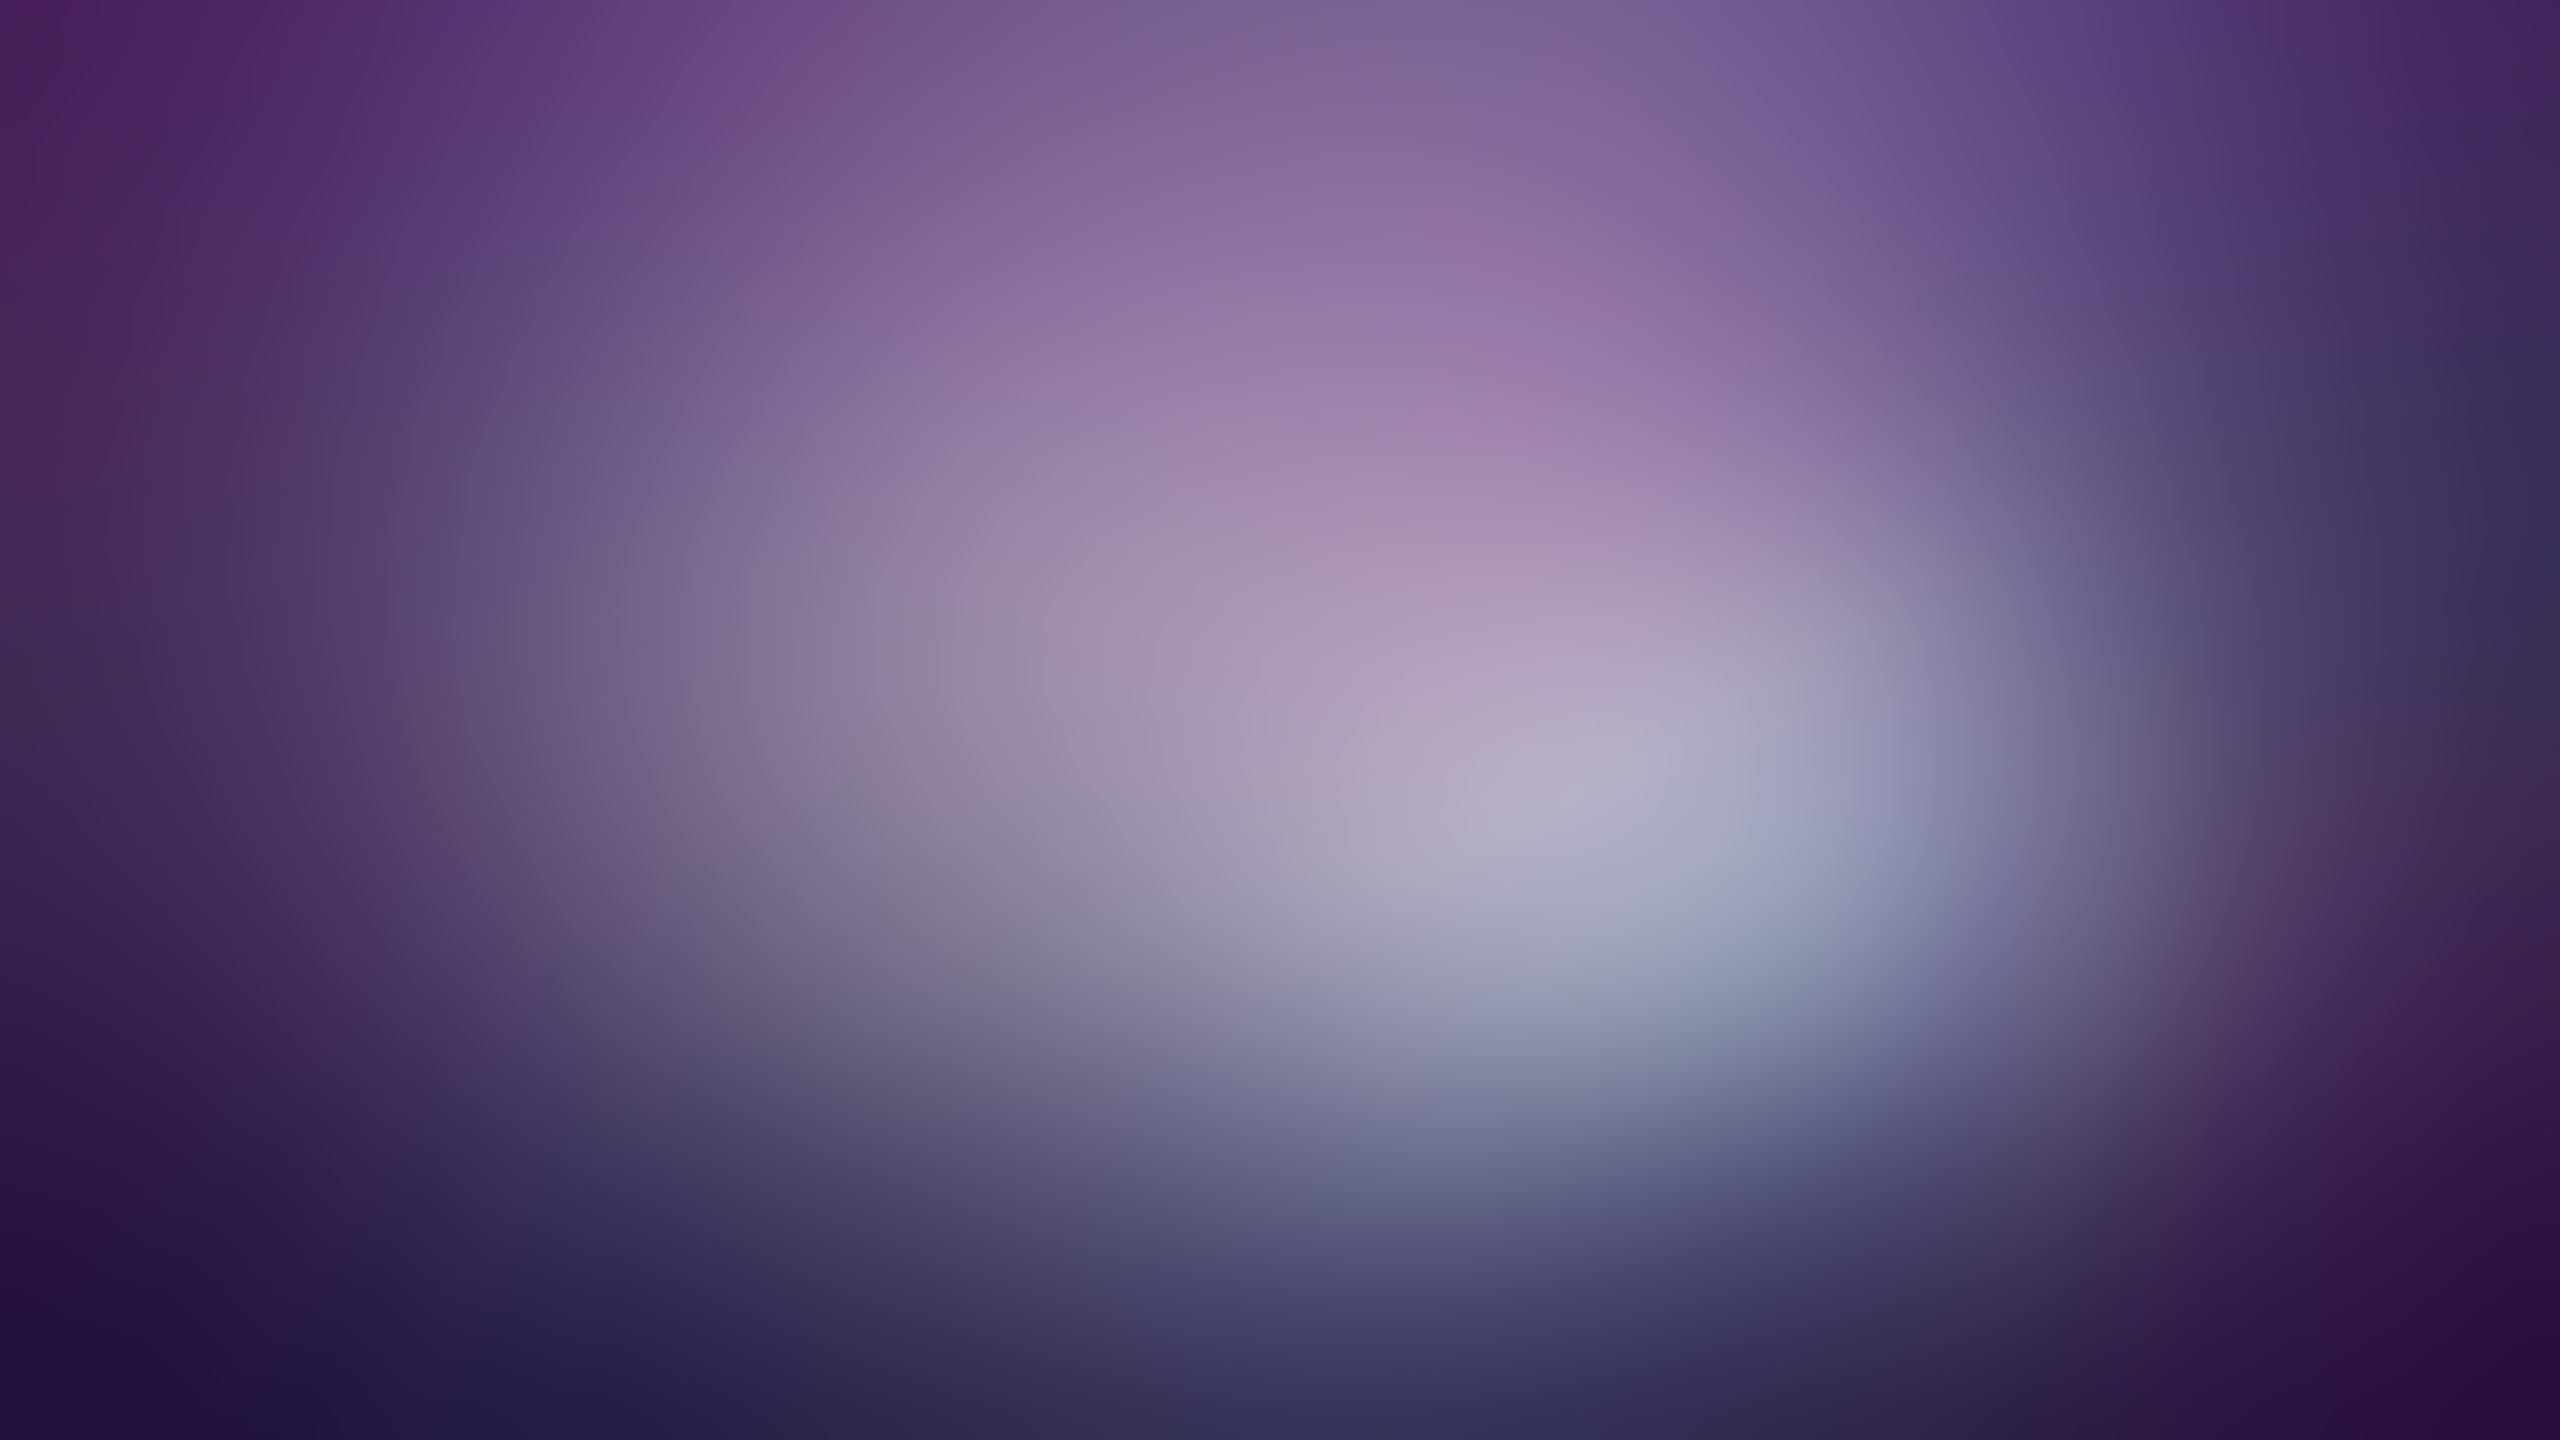 blur, blurred, gaussian, minimalistic, purple, solid